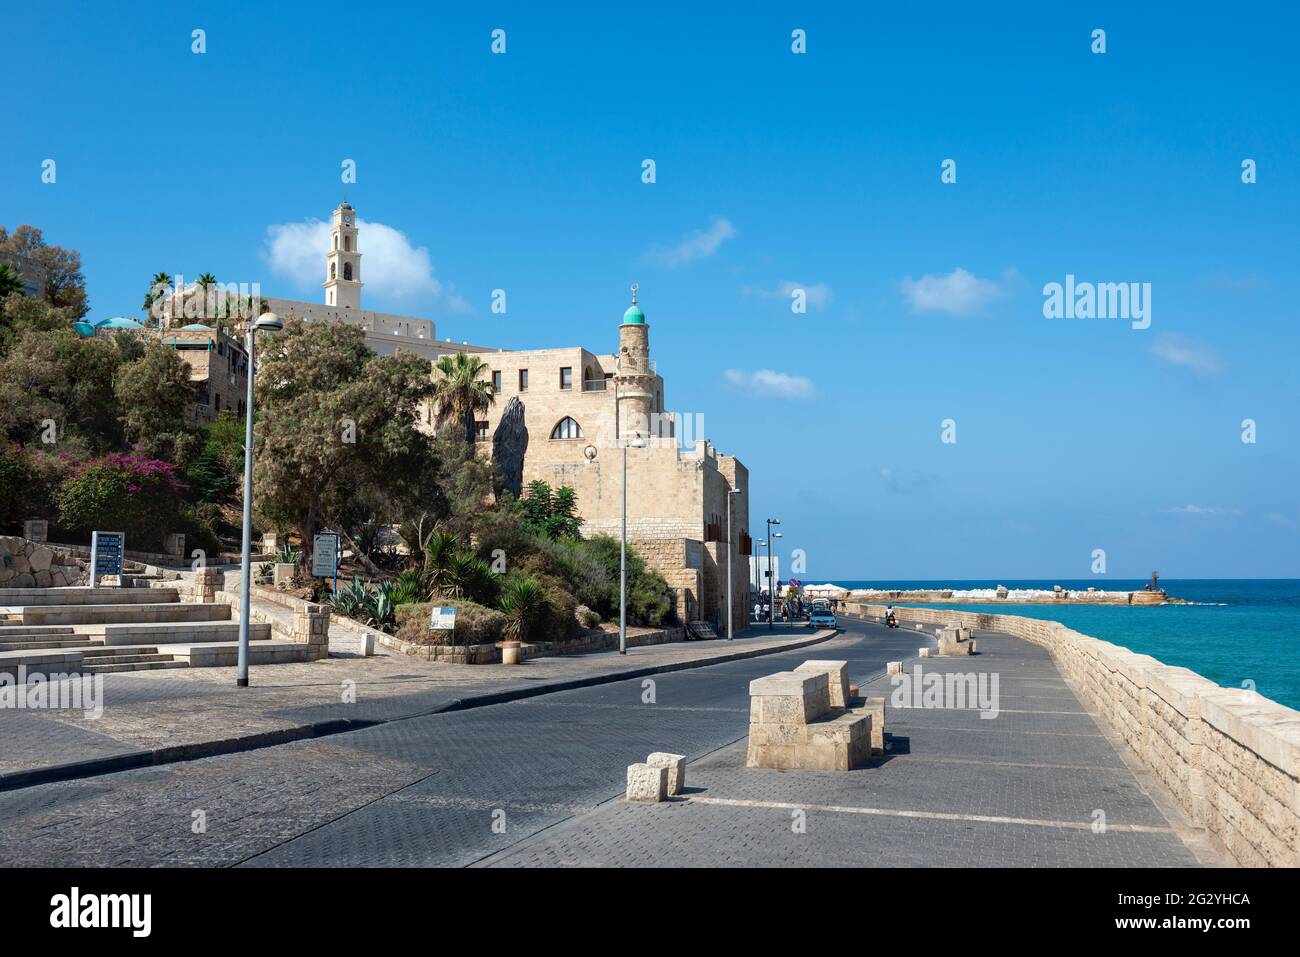 Vue sur la Mosquée Al-Bahr ou la Mosquée de la mer, minaret de la mosquée dans le Vieux Jaffa, ancien port de Jaffa, côte de la mer Méditerranée à tel Aviv Yaffo, Israël Banque D'Images